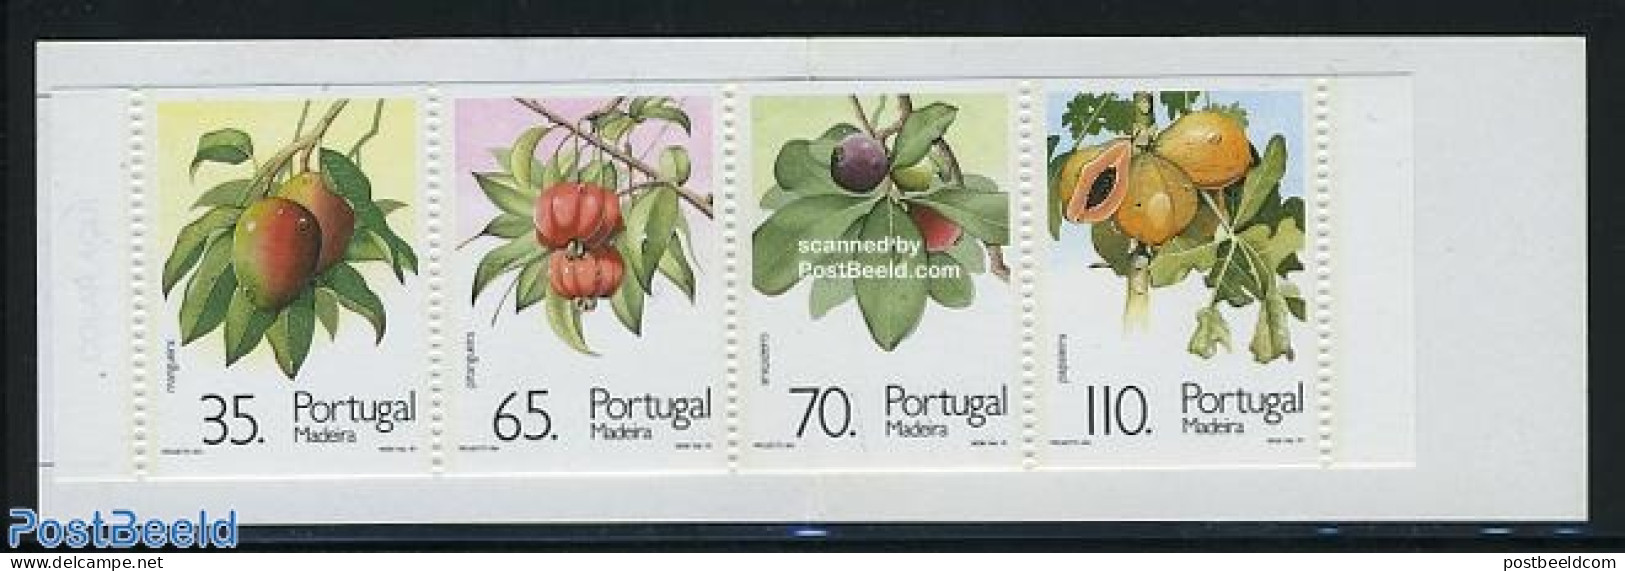 Madeira 1991 Fruits 4v In Booklet, Mint NH, Nature - Fruit - Stamp Booklets - Fruit